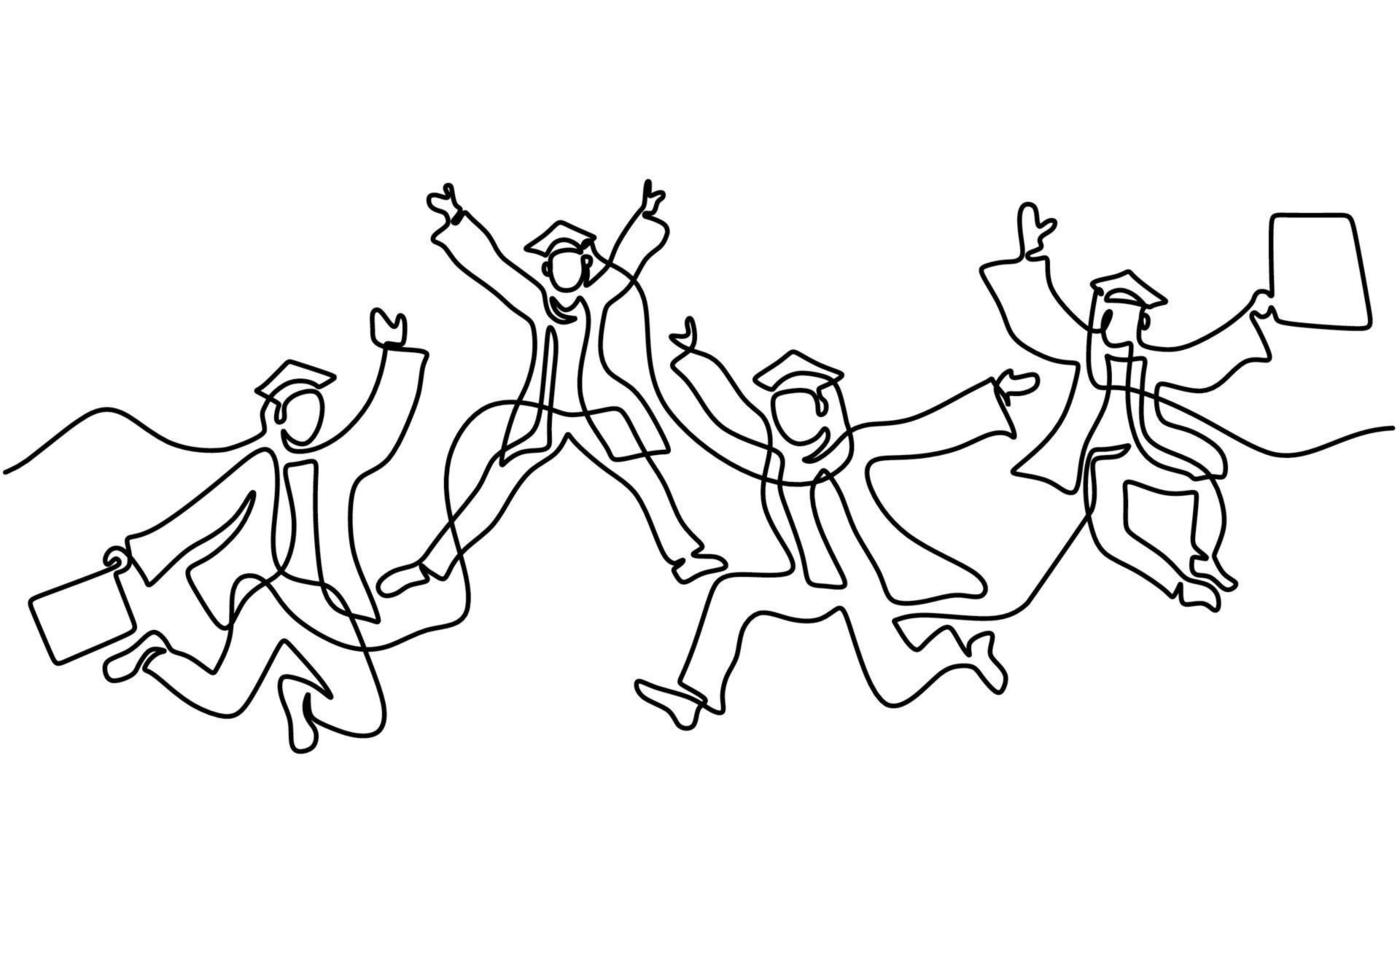 un dibujo de línea de un joven estudiante universitario graduado feliz saltando estilo minimalista de arte de línea continua dibujada a mano sobre fondo blanco. concepto de celebración. ilustración de dibujo vectorial vector